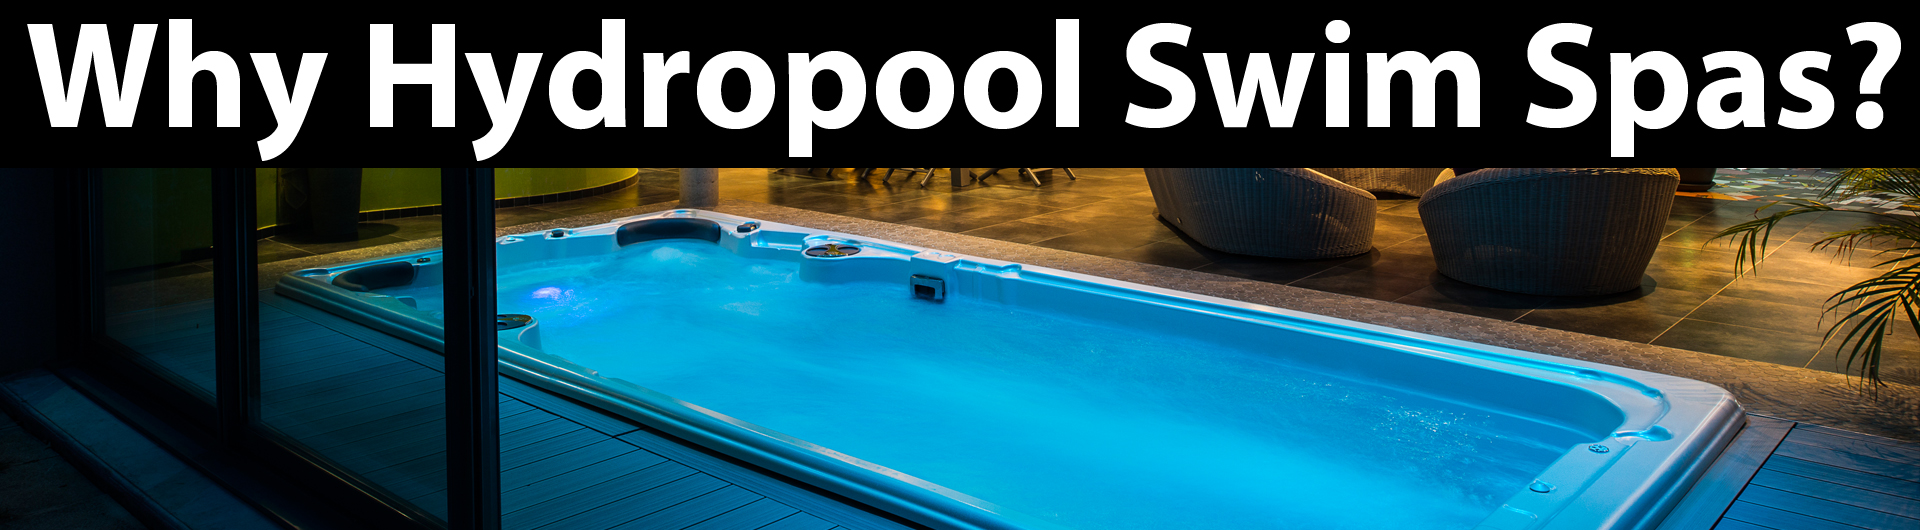 why hydropool swim spa pools